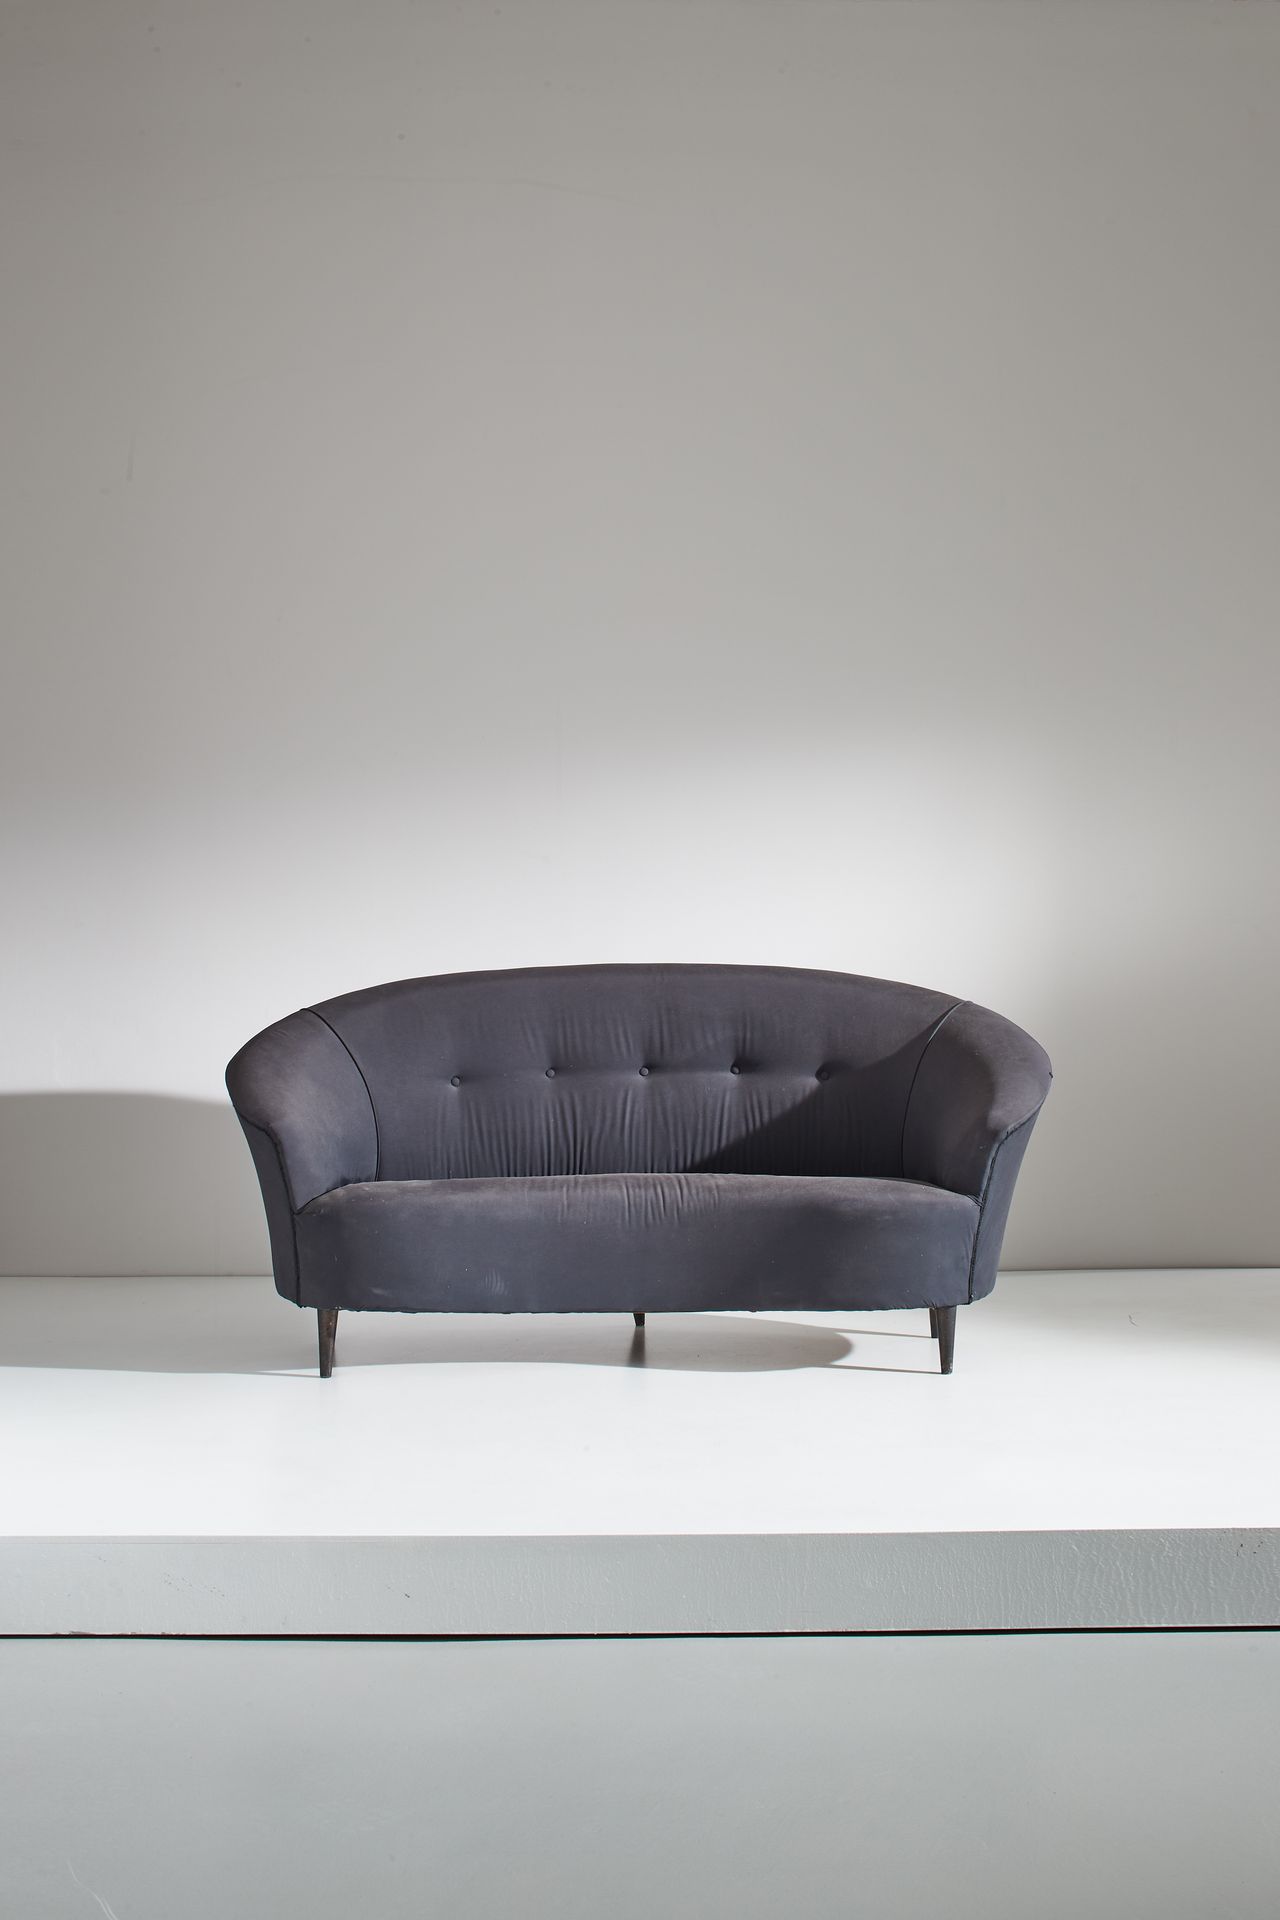 MANIFATTURA ITALIANA Sofa. Turned wood upholstered fabric.
Cm 80x170x70
AN ITALI&hellip;